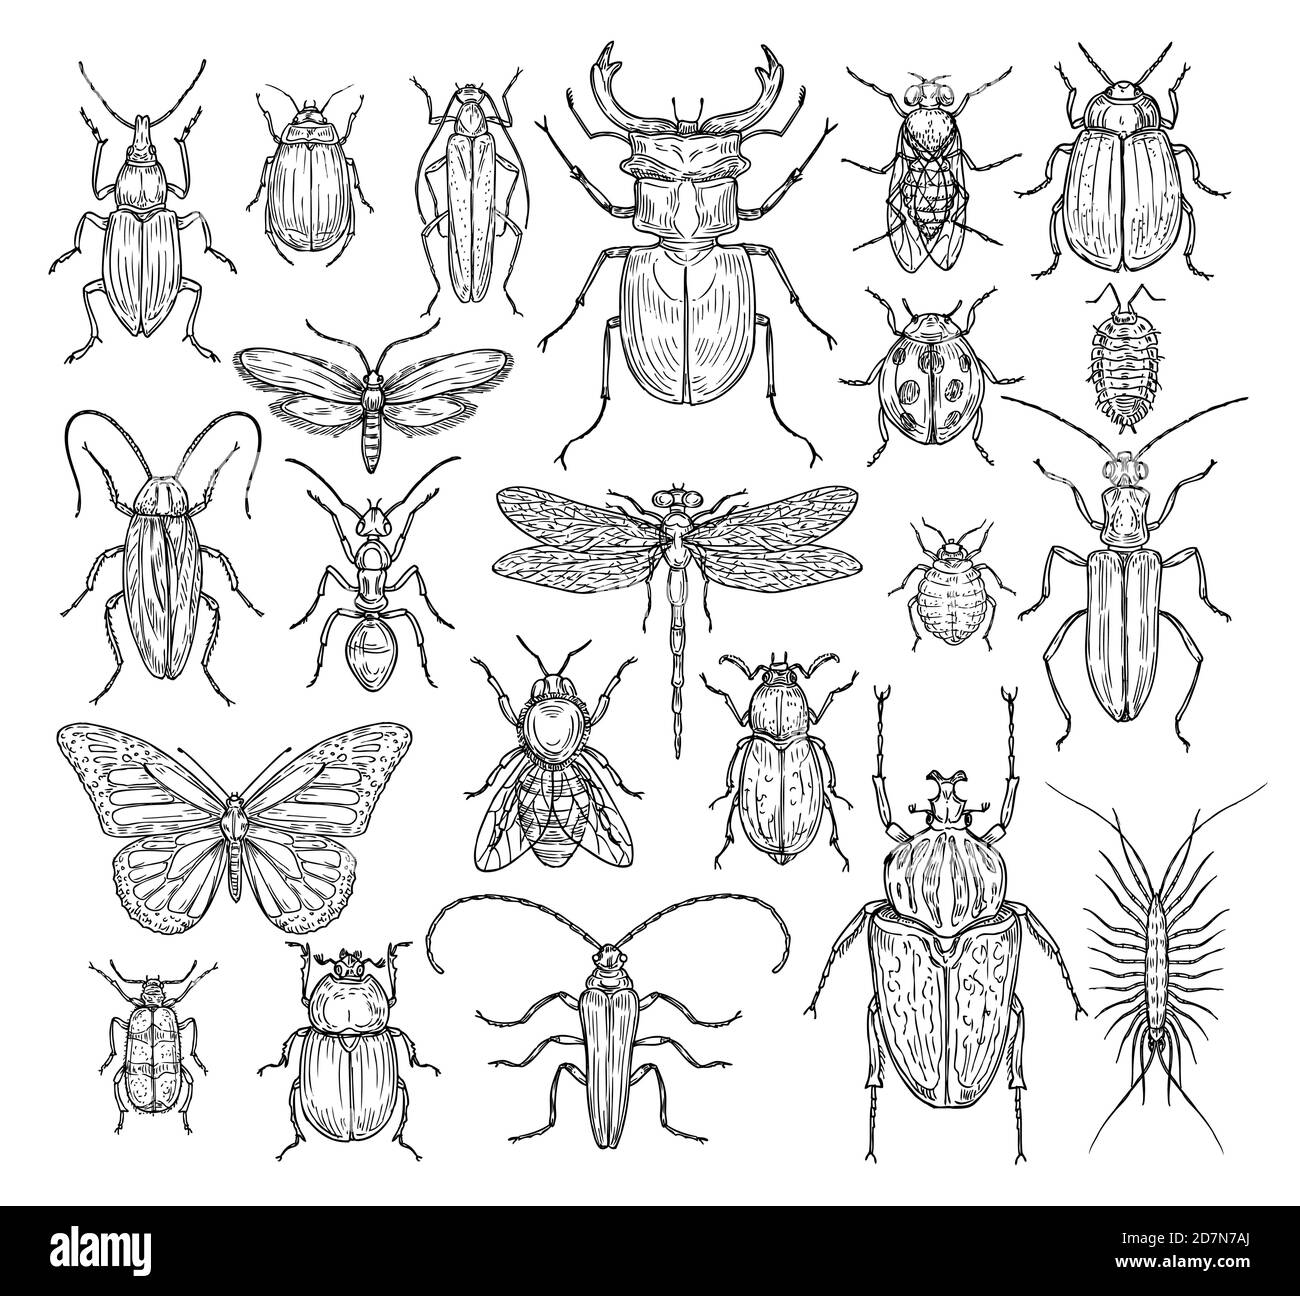 Insetti mano disegnata. Farfalla, scarabeo e mosca, formica. Libellula, ladybug e api, pidocchi e scarafaggi. Insieme di vettori di incisione dello schizzo retrospettiva. Illustrazione di api di insetto e libellula, farfalla e formica Illustrazione Vettoriale